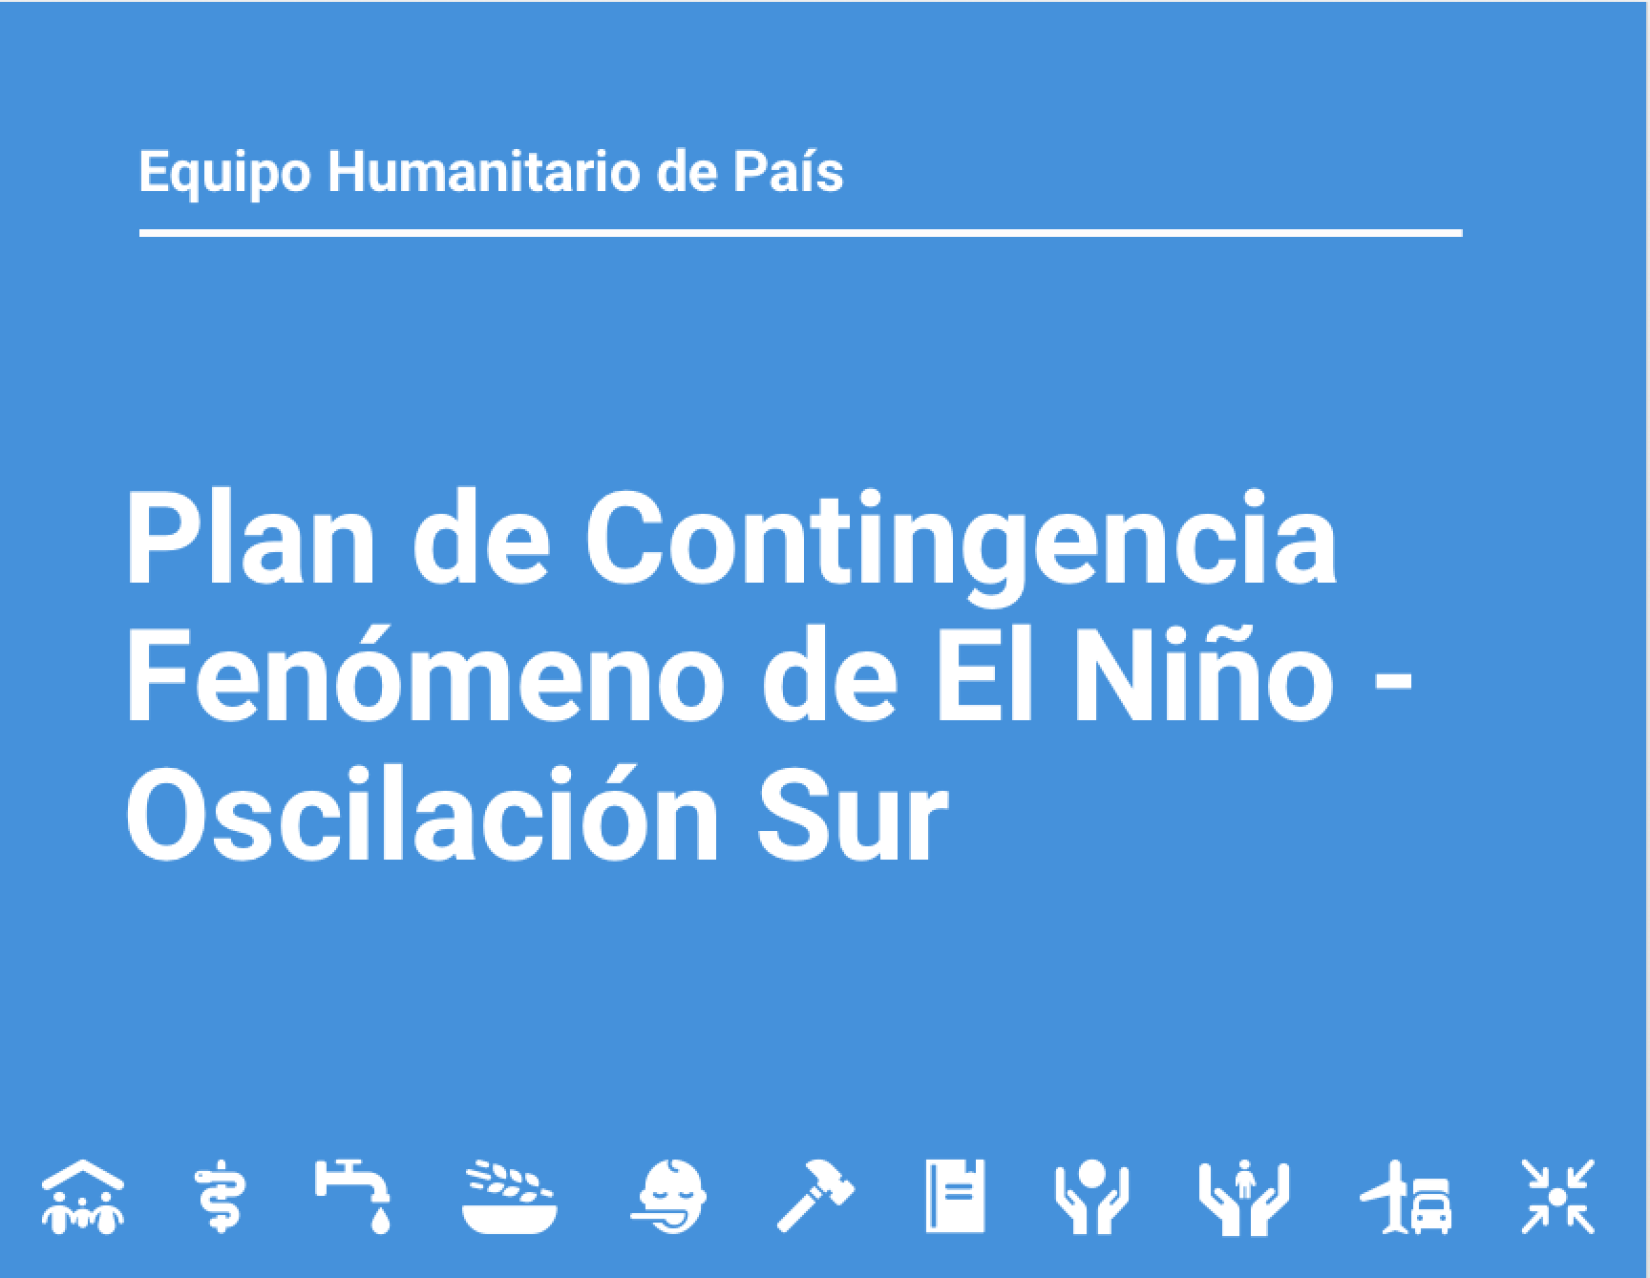 Portada de la presentación del Plan de Contingencia Fenómeno de El Niño- Oscilación Sur